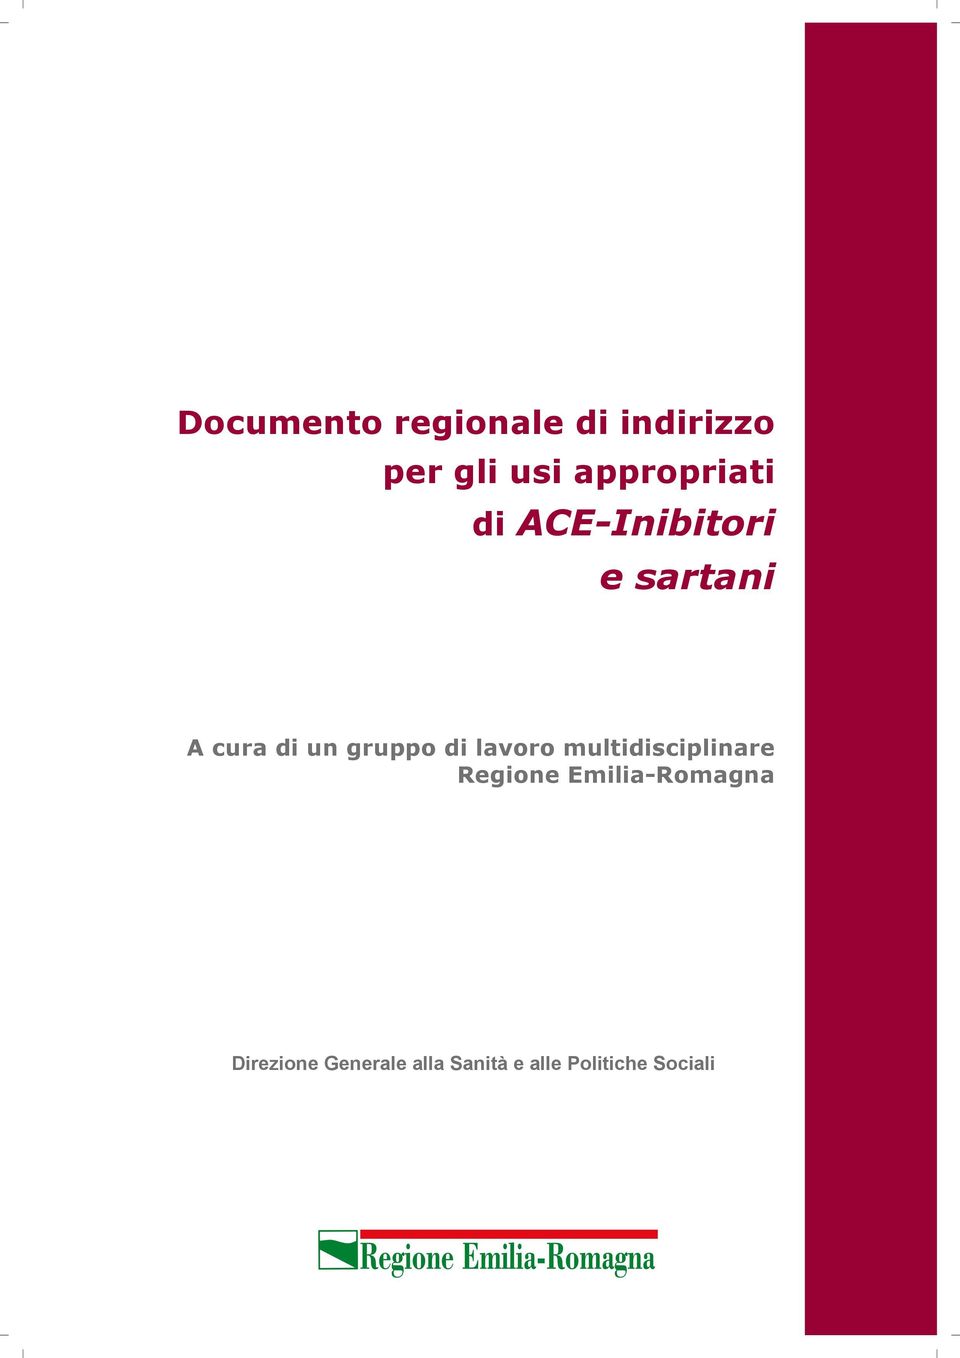 multidisciplinare Regione Emilia-Romagna